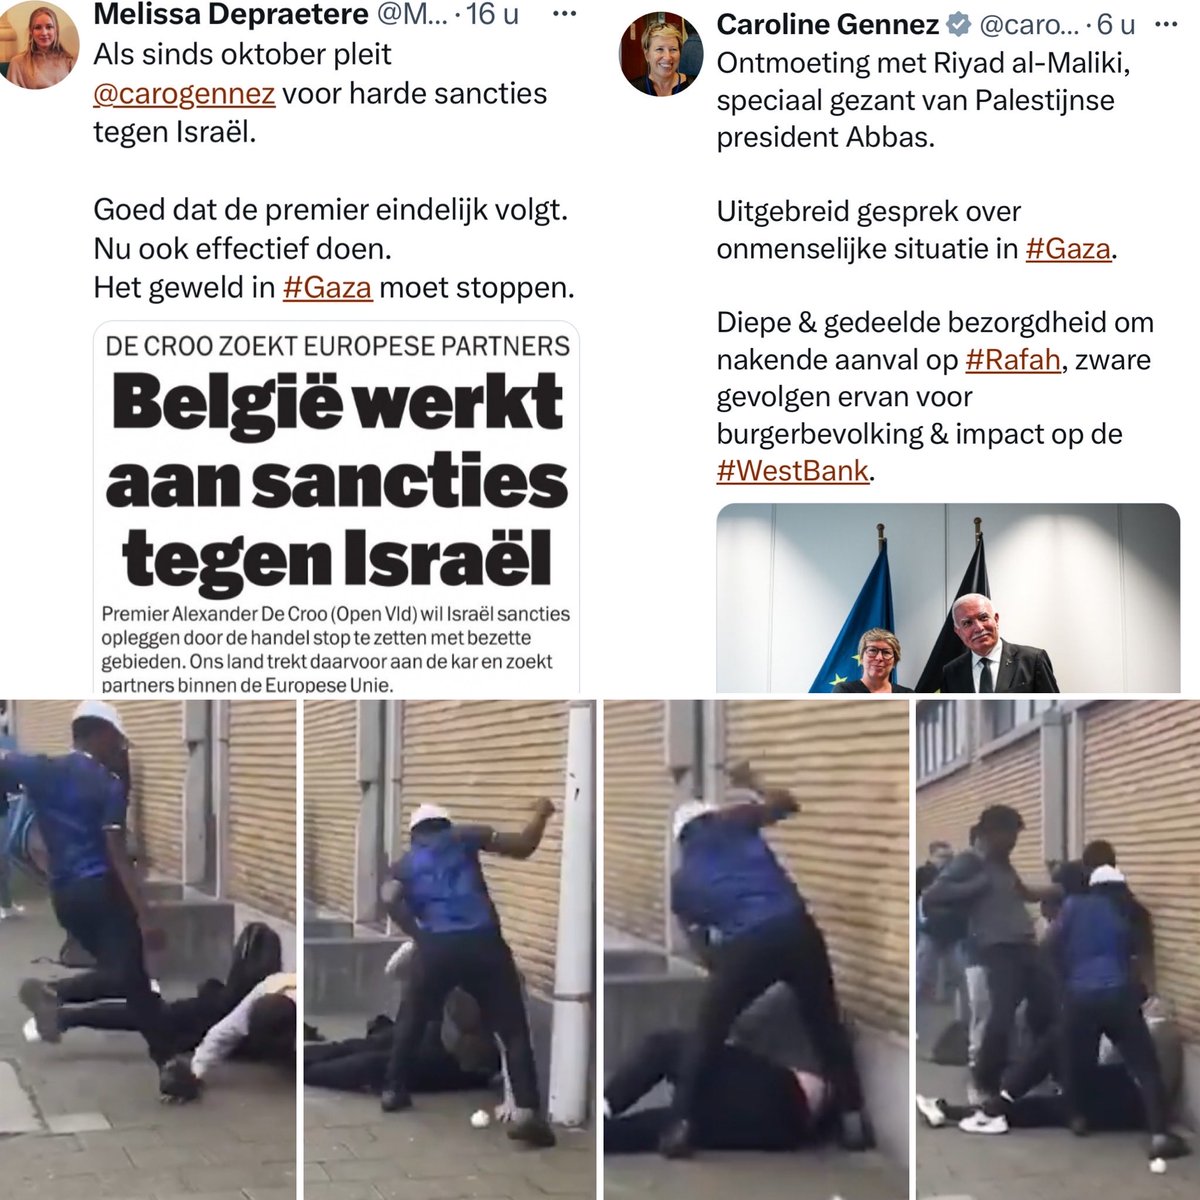 “Het geweld in #Gaza moet stoppen aldus de rode partijvoorzitter en de minister van Gazaanse zaken… 

Ik zeg: “Het geweld in Vlaanderen gepleegd door tuig moet stoppen”